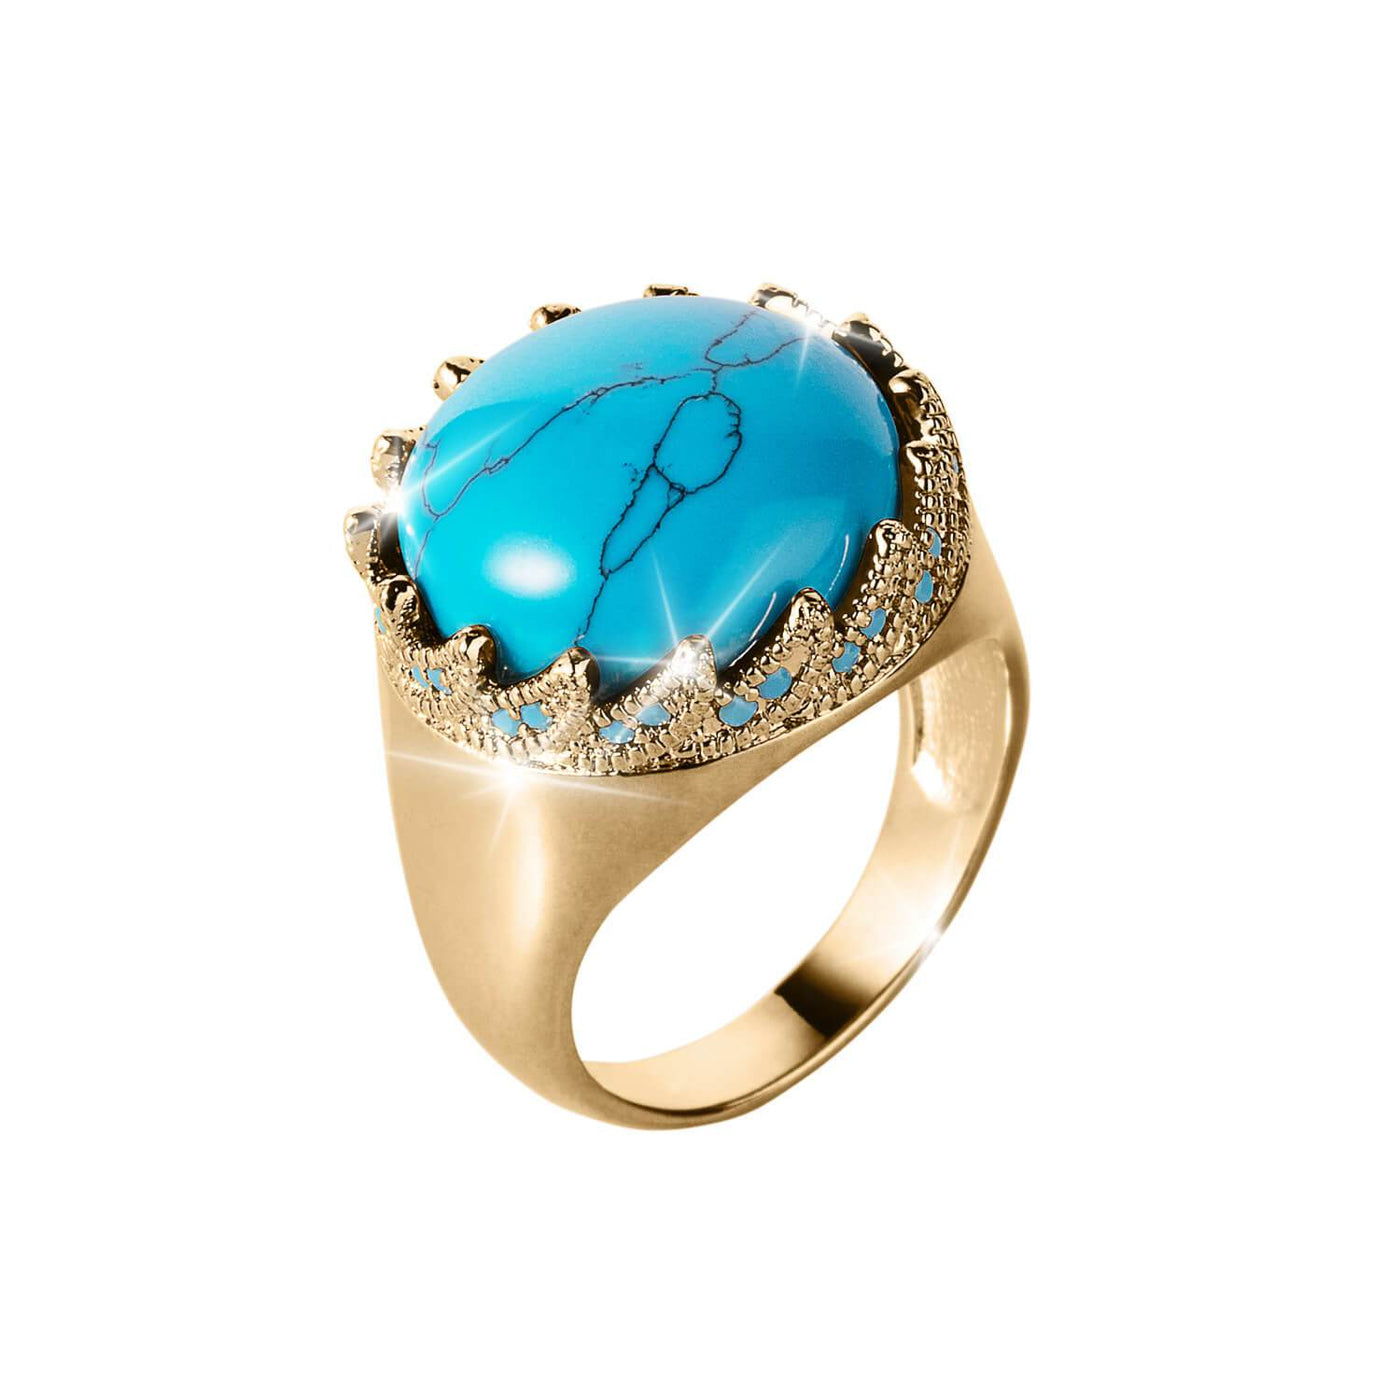 Daniel Steiger Ocean Turquoise Men's Ring